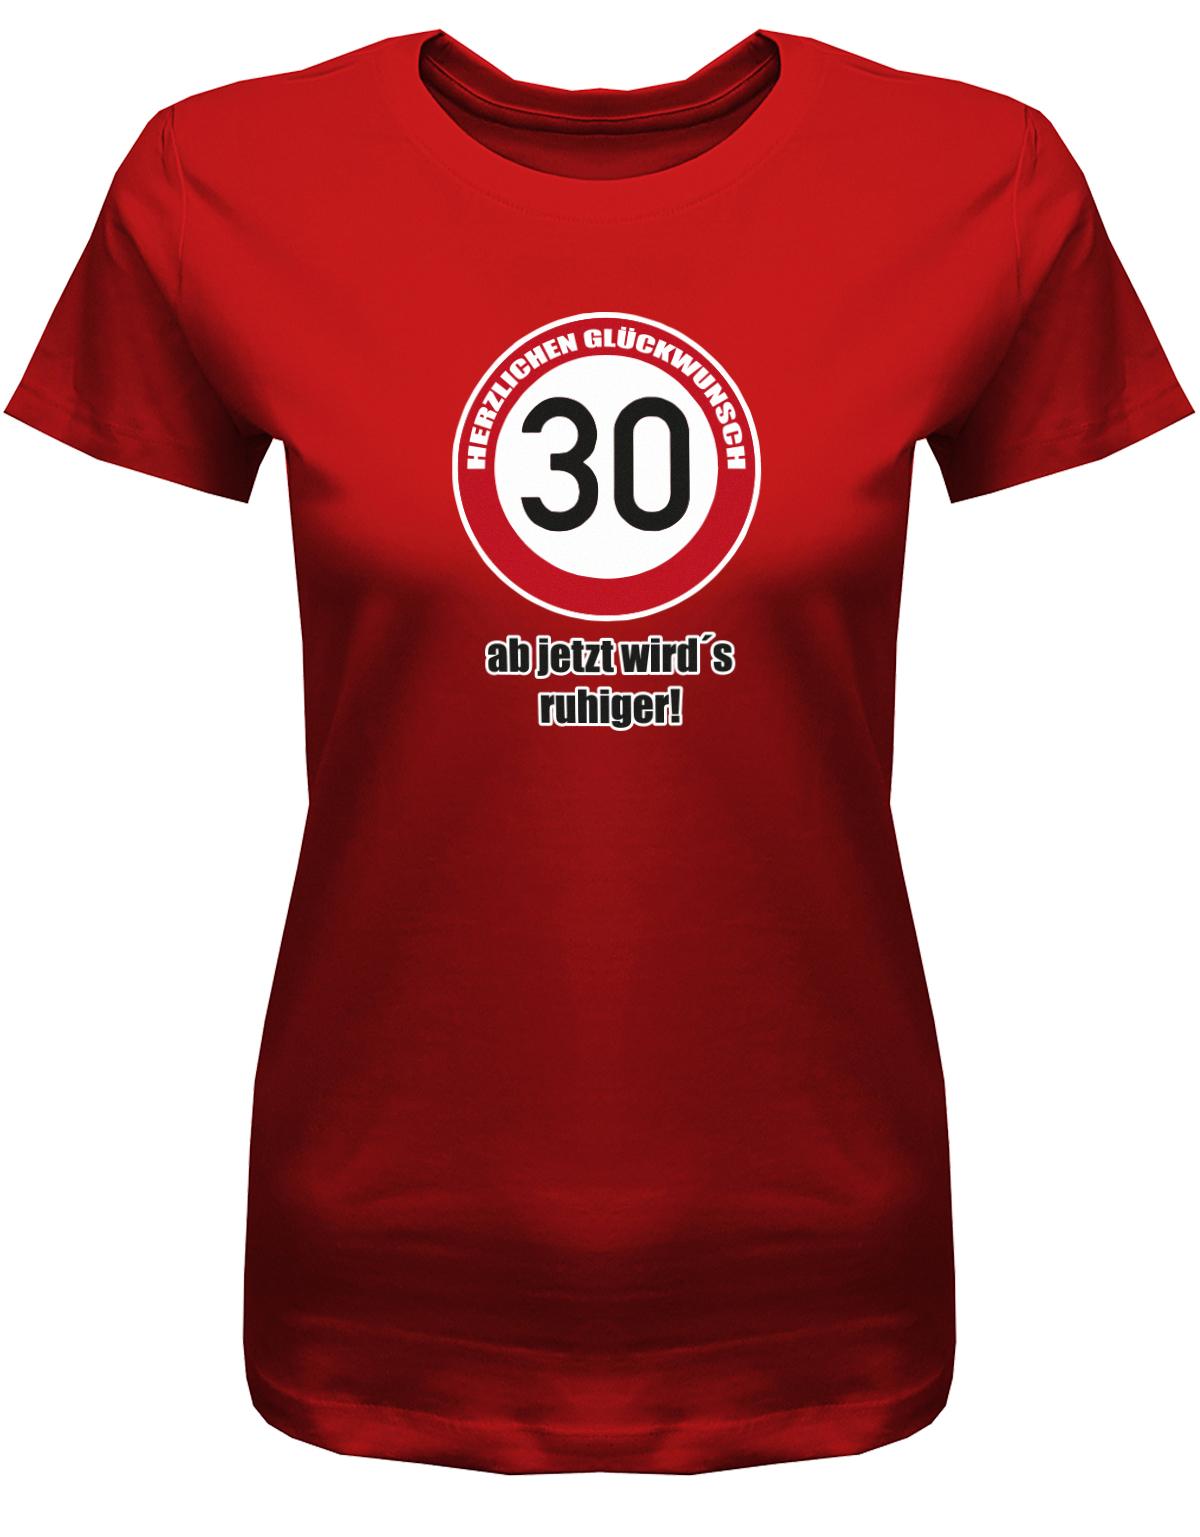 Lustiges T-Shirt zum 30. Geburtstag für die Frau Bedruckt mit Herzlichen Glückwunsch 30 Verkehrsschild ab jetzt wird’s ruhiger.  Rot